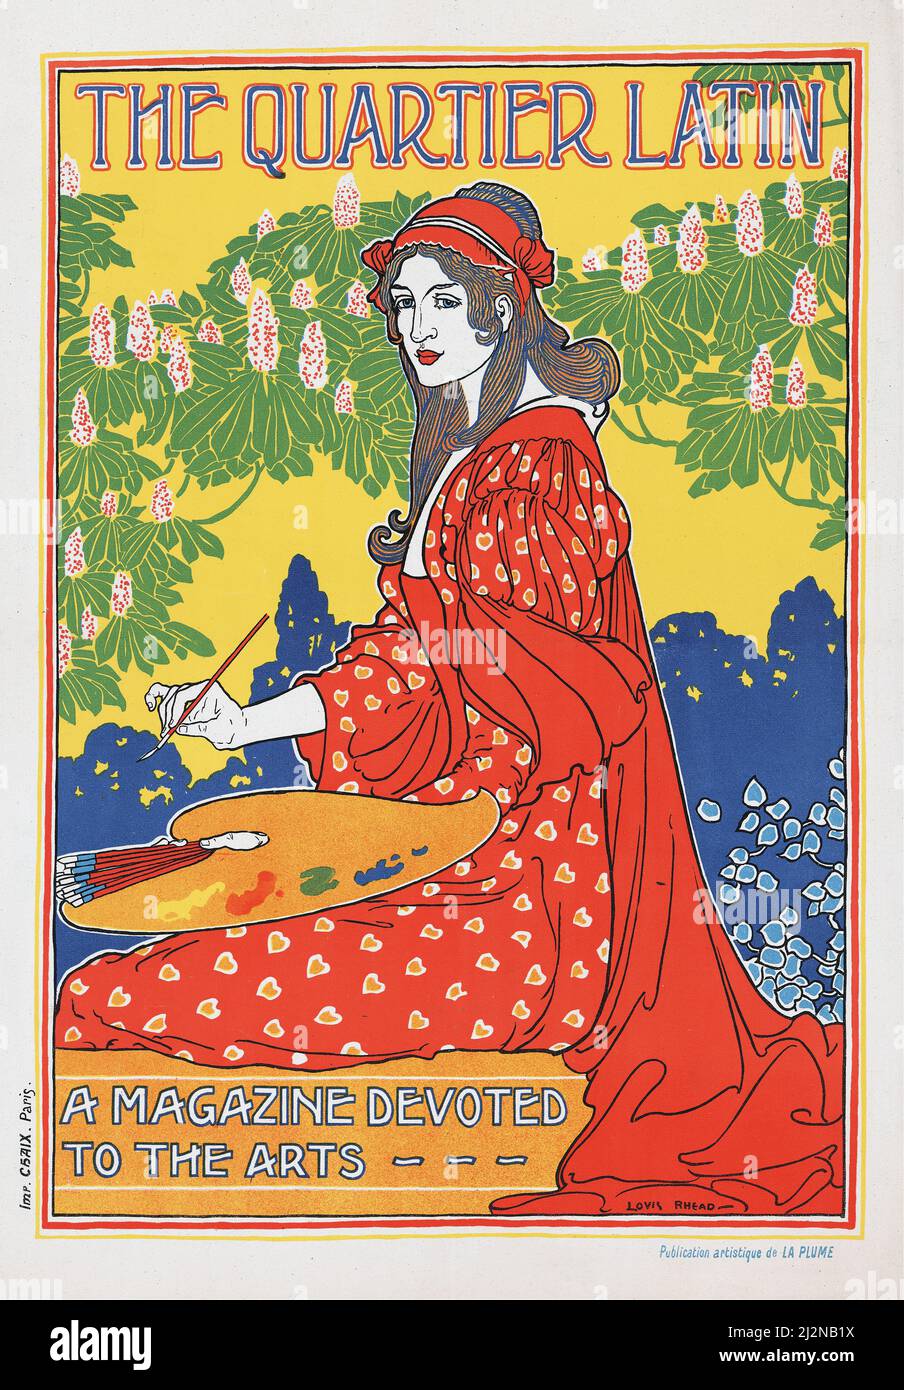 Louis Rhead - Poster Art Nouveau - il quartiere Latino. Una rivista dedicata alle arti (1890). Foto Stock